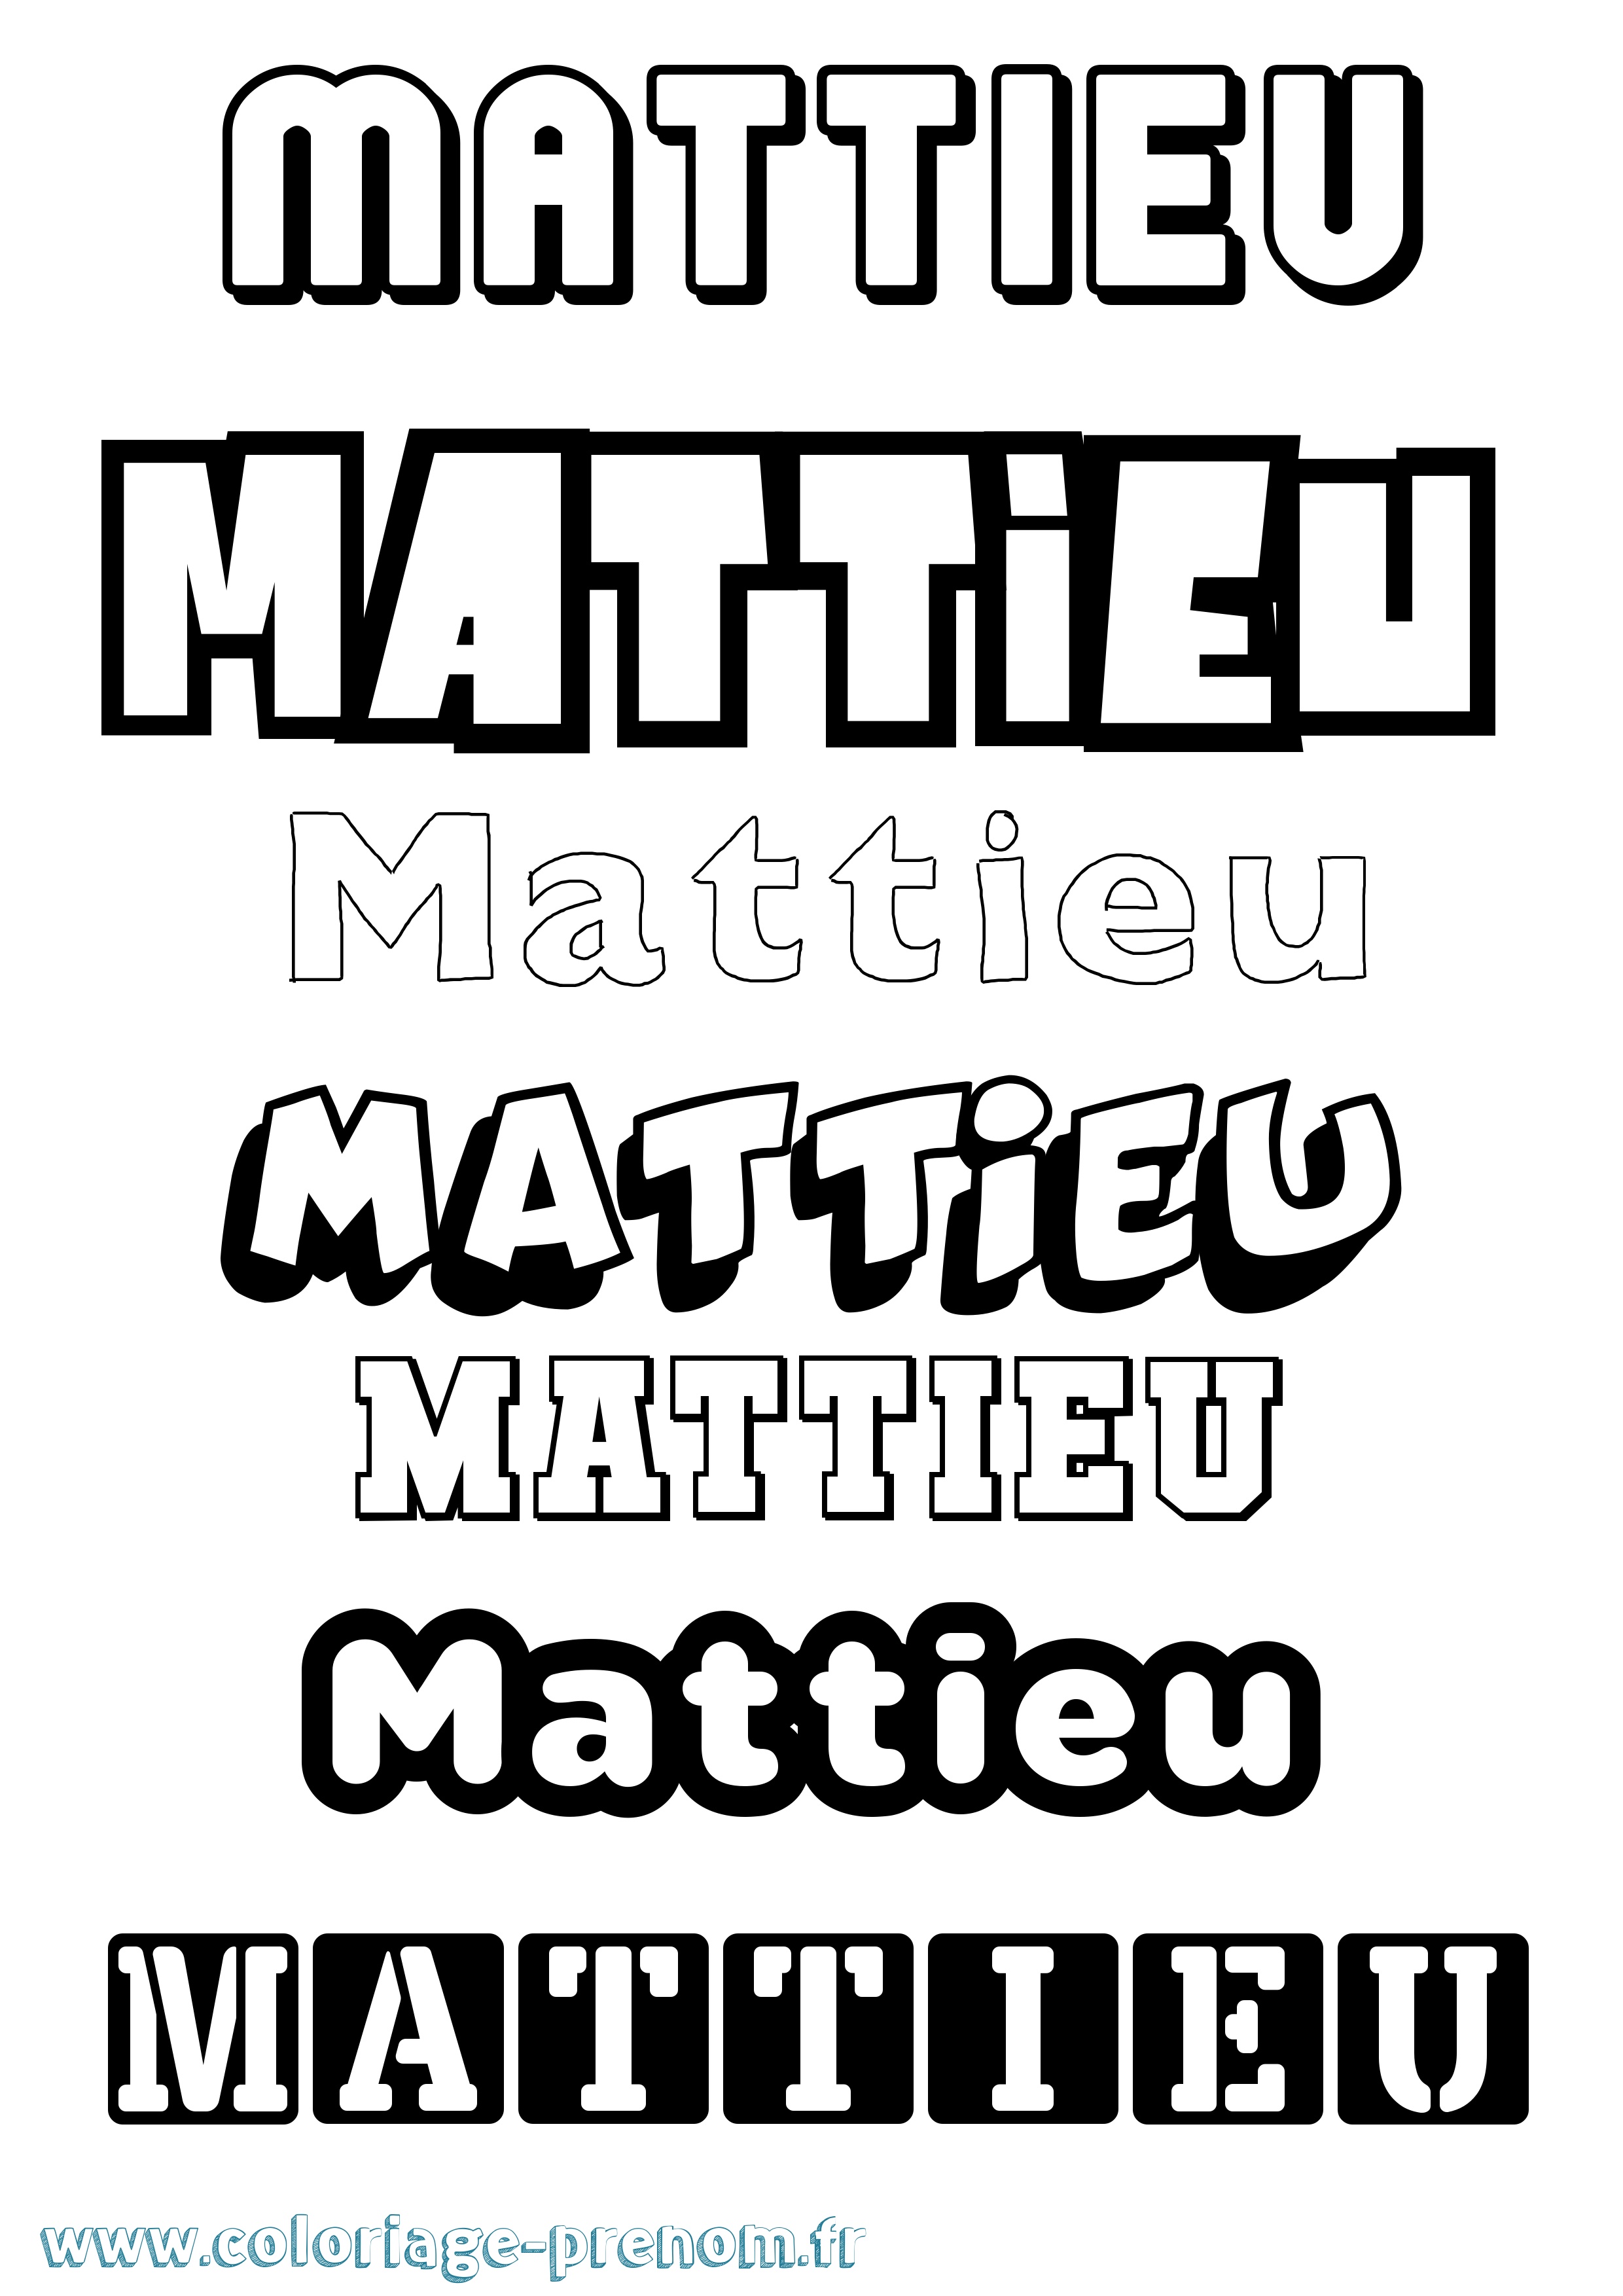 Coloriage prénom Mattieu Simple